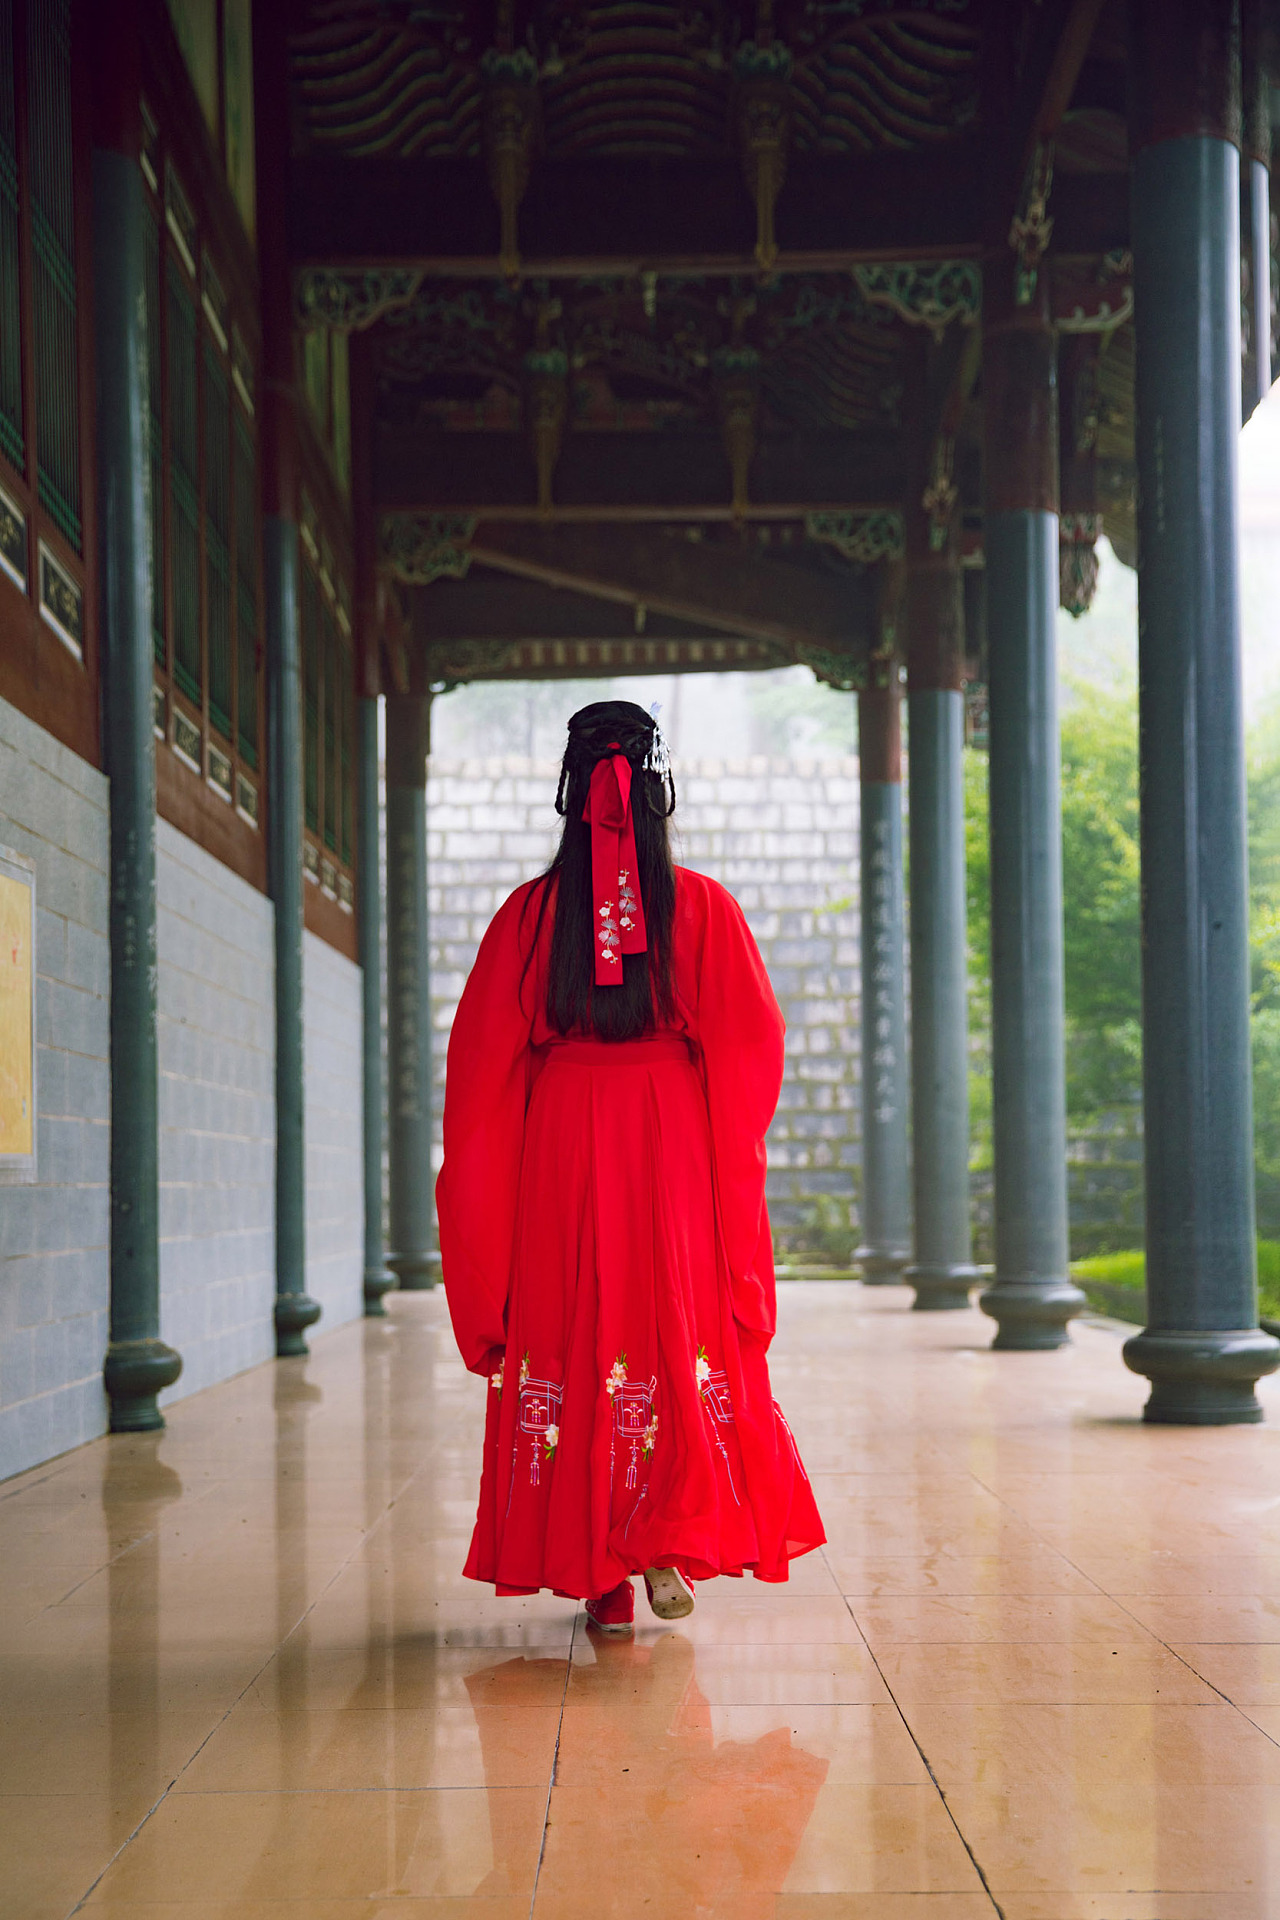 中国寺庙美女和背景 库存图片. 图片 包括有 妇女, 照片, 背包, 祈祷, 旅行, 样式, 寺庙, 女孩 - 133679805